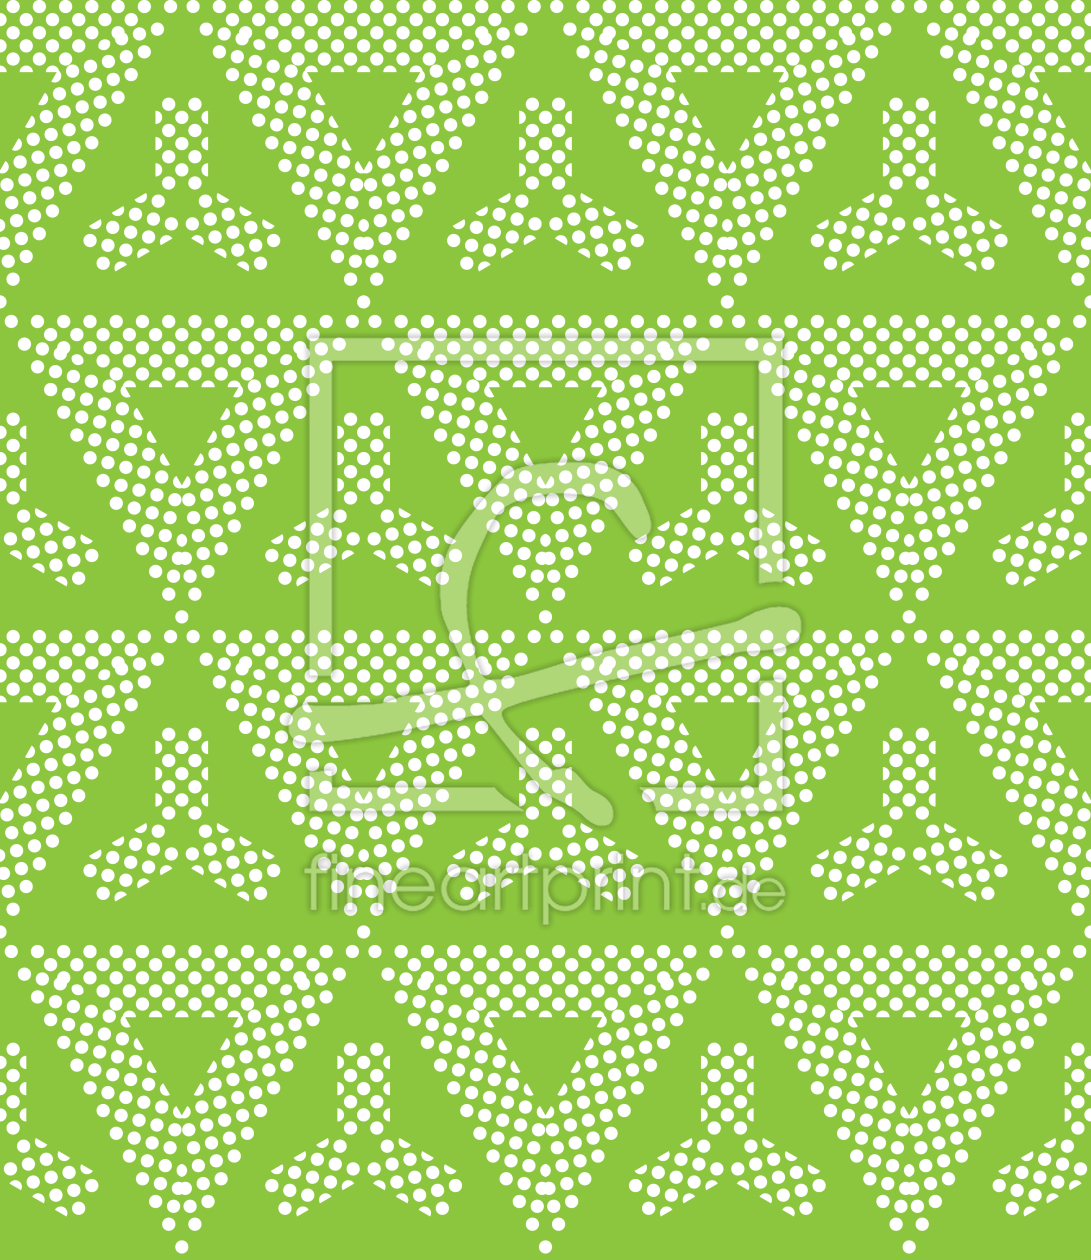 Bild-Nr.: 9014890 Über die Punkte und Dreiecke erstellt von patterndesigns-com